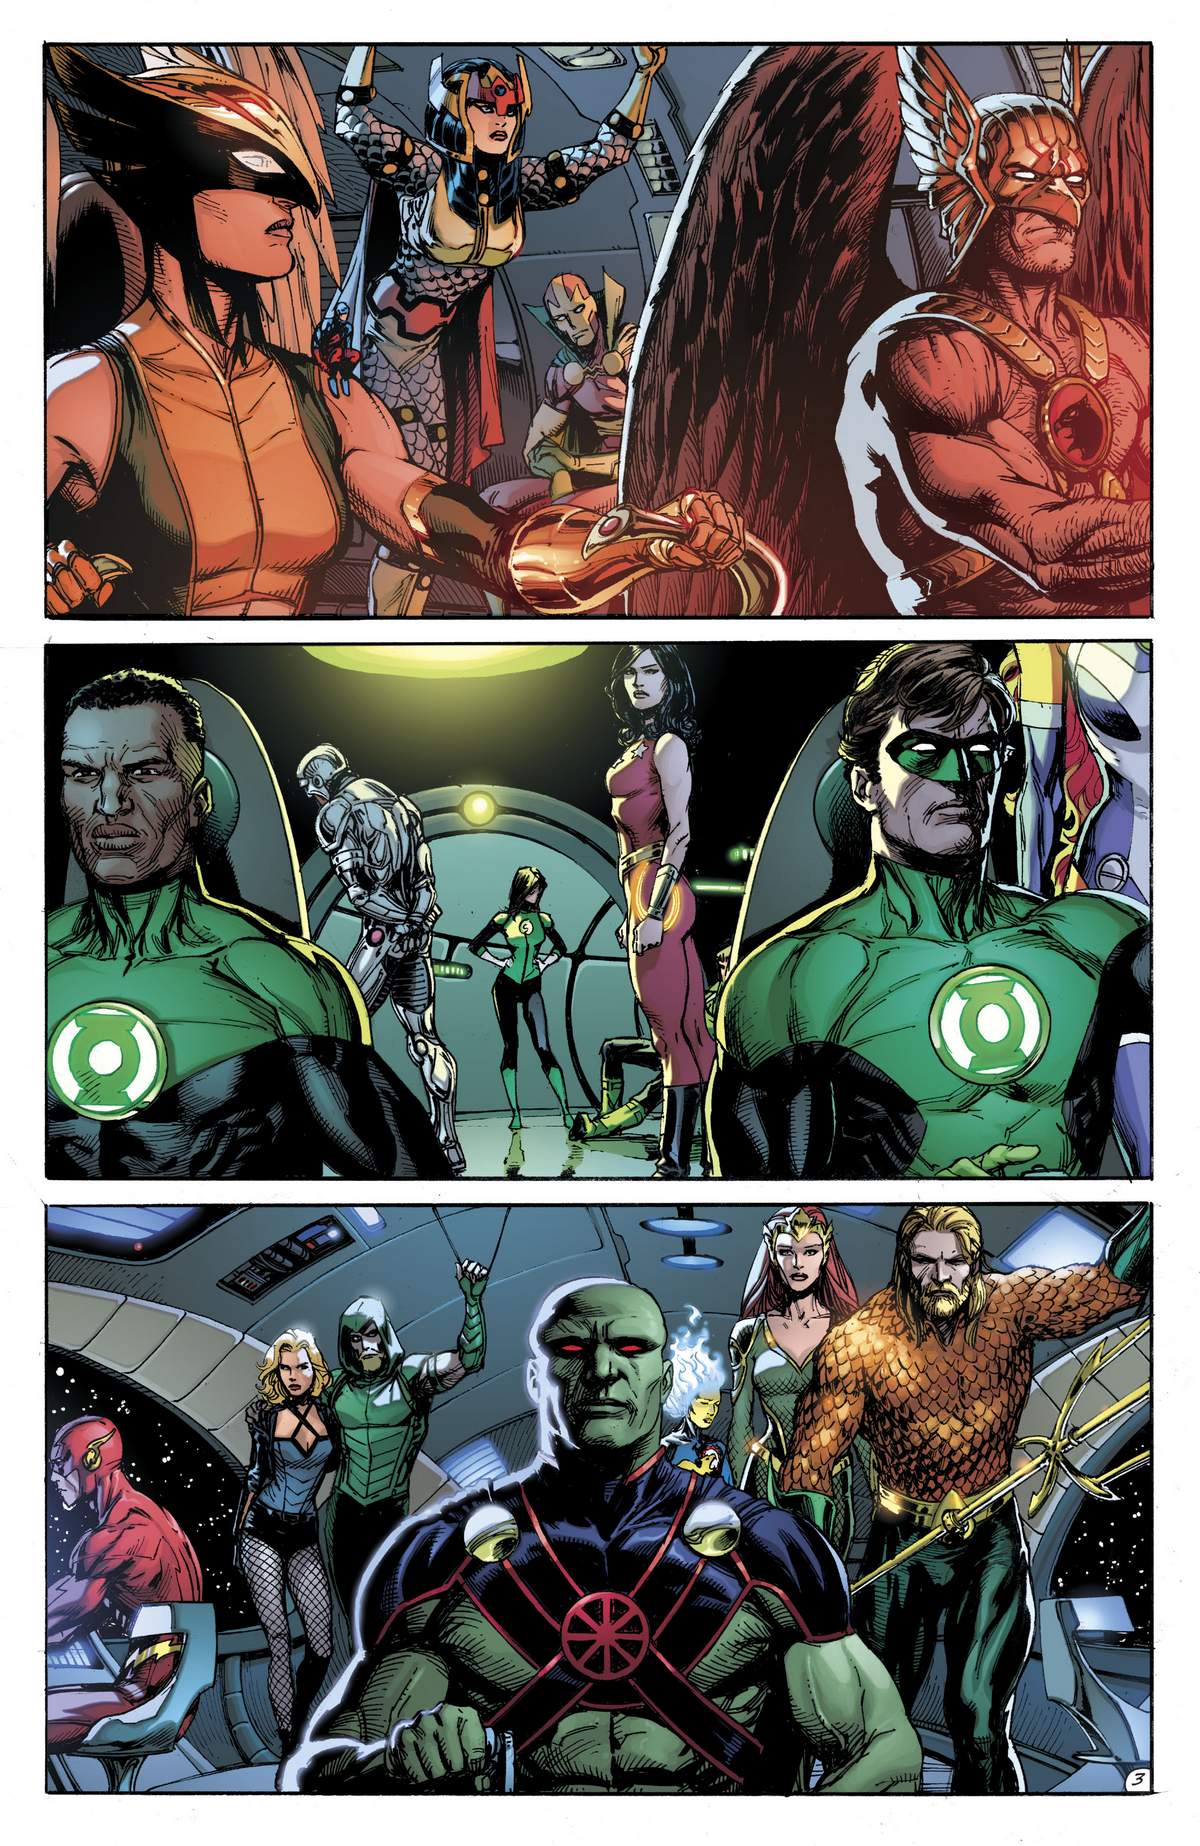 Nova CRISE na DC Comics - Heróis indo para Marte - O Relógio do Juízo Final - Doomsday Clock - Blog Farofeiros